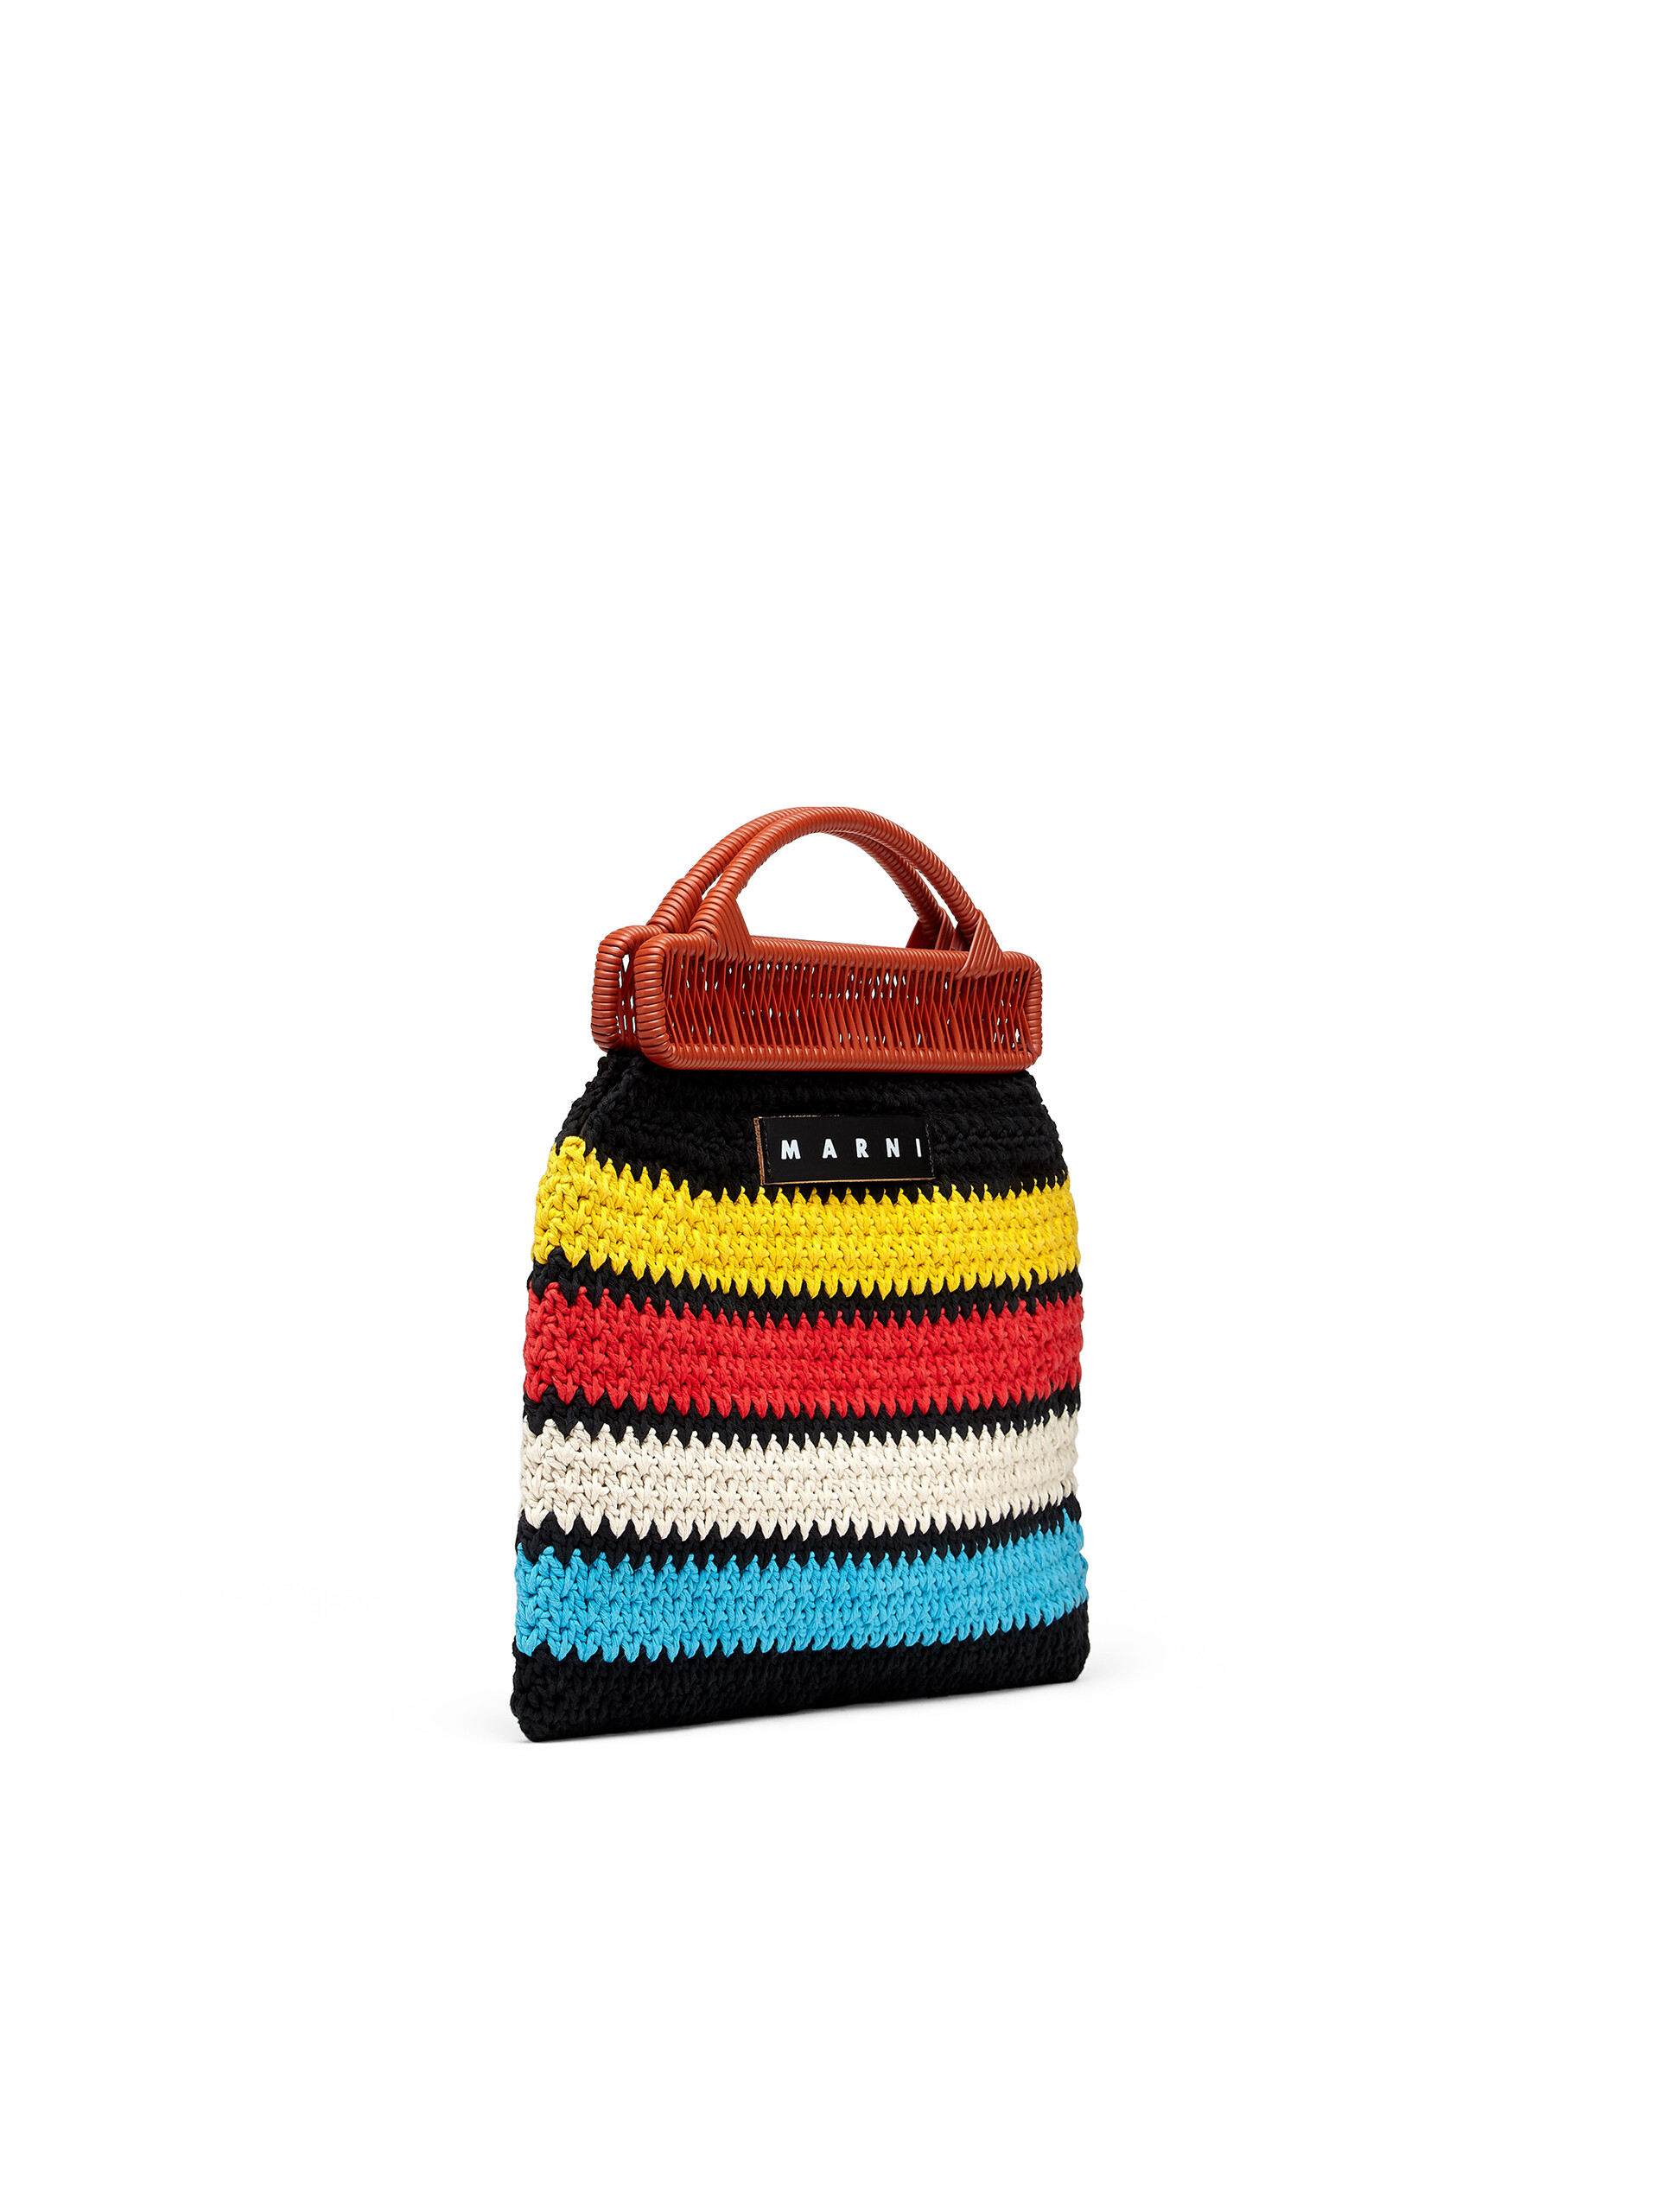 MARNI MARKET bag in multicolor crochet cotton - Furniture - Image 2